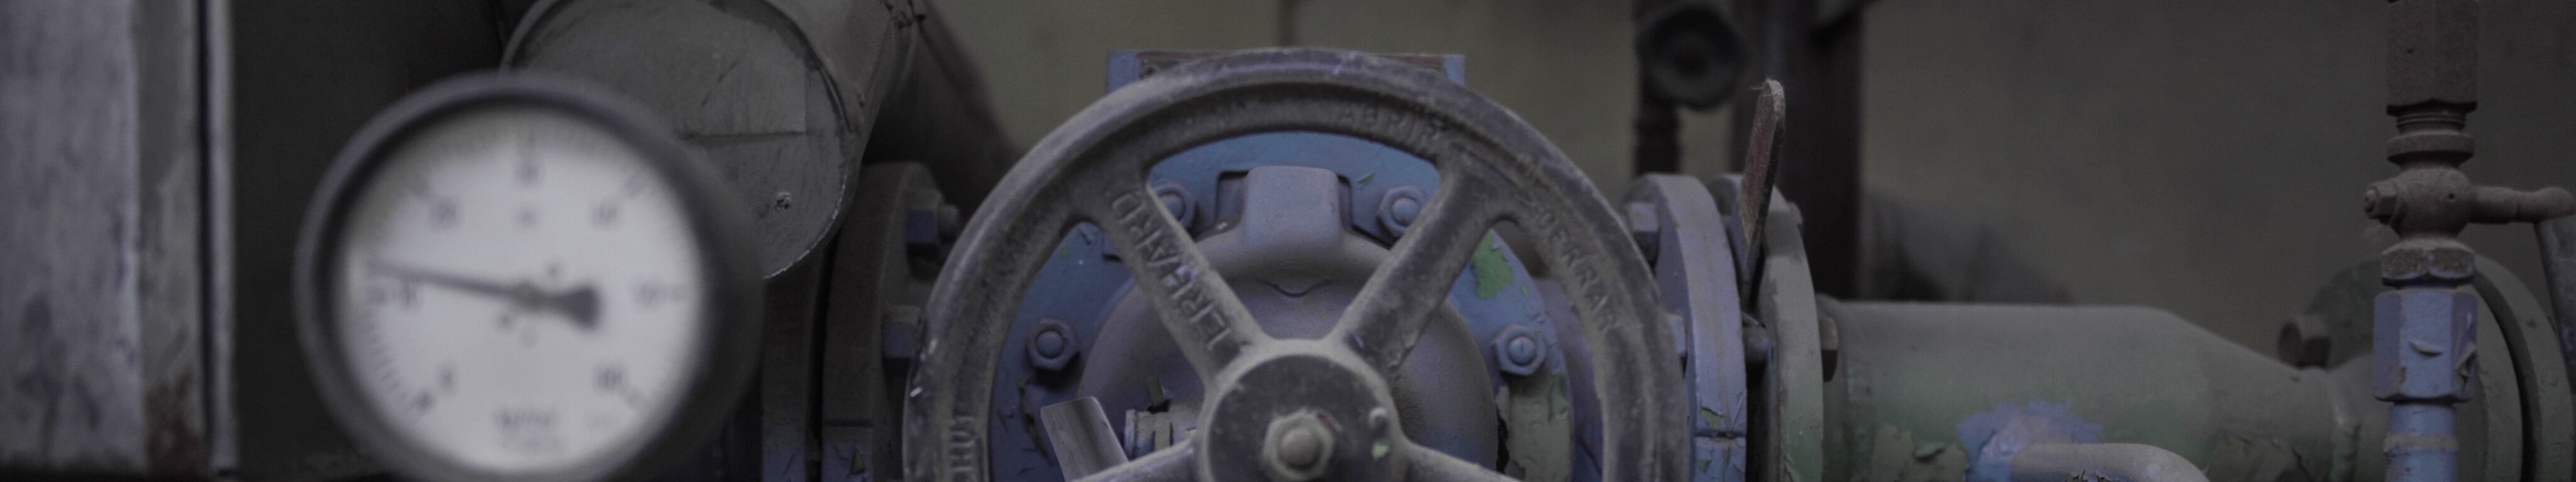 Detailaufnahme eines Steuerungsrades mit Druckanzeige einer historischen Maschine im LWL-Industriemuseum Henrichshütte in Hattingen.  © Tourismus NRW e.V.